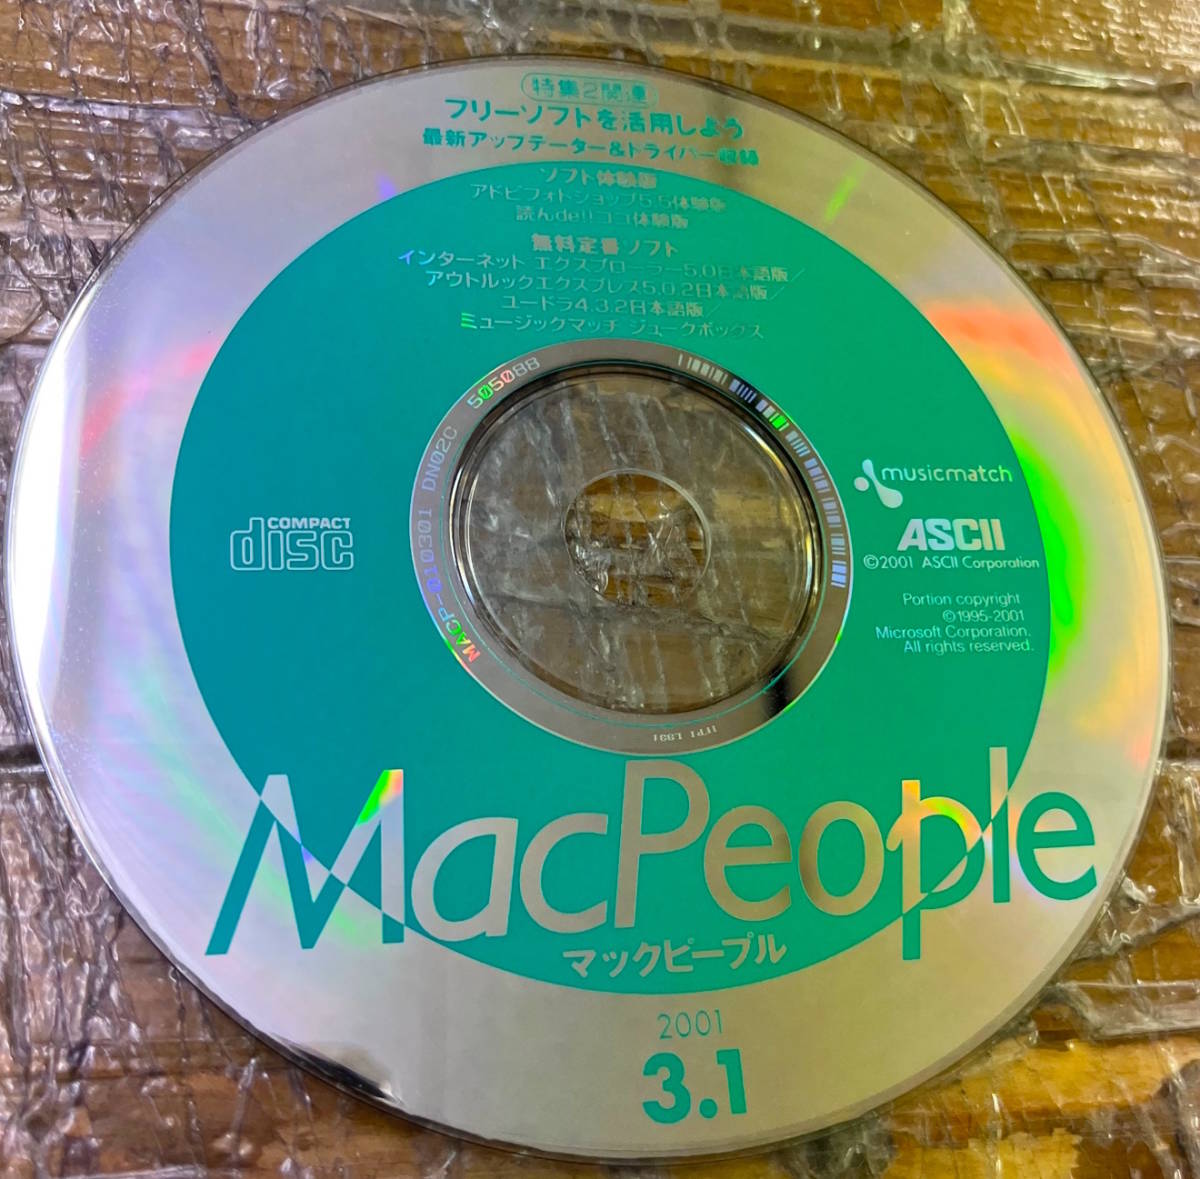 * ценный z*....Macкнига@ старая книга *Mac people Mac People * Macintosh apple* энергия книжка G4*2001 год 3 месяц 1 день номер эпоха Heisei 13 год * дополнение CD есть 